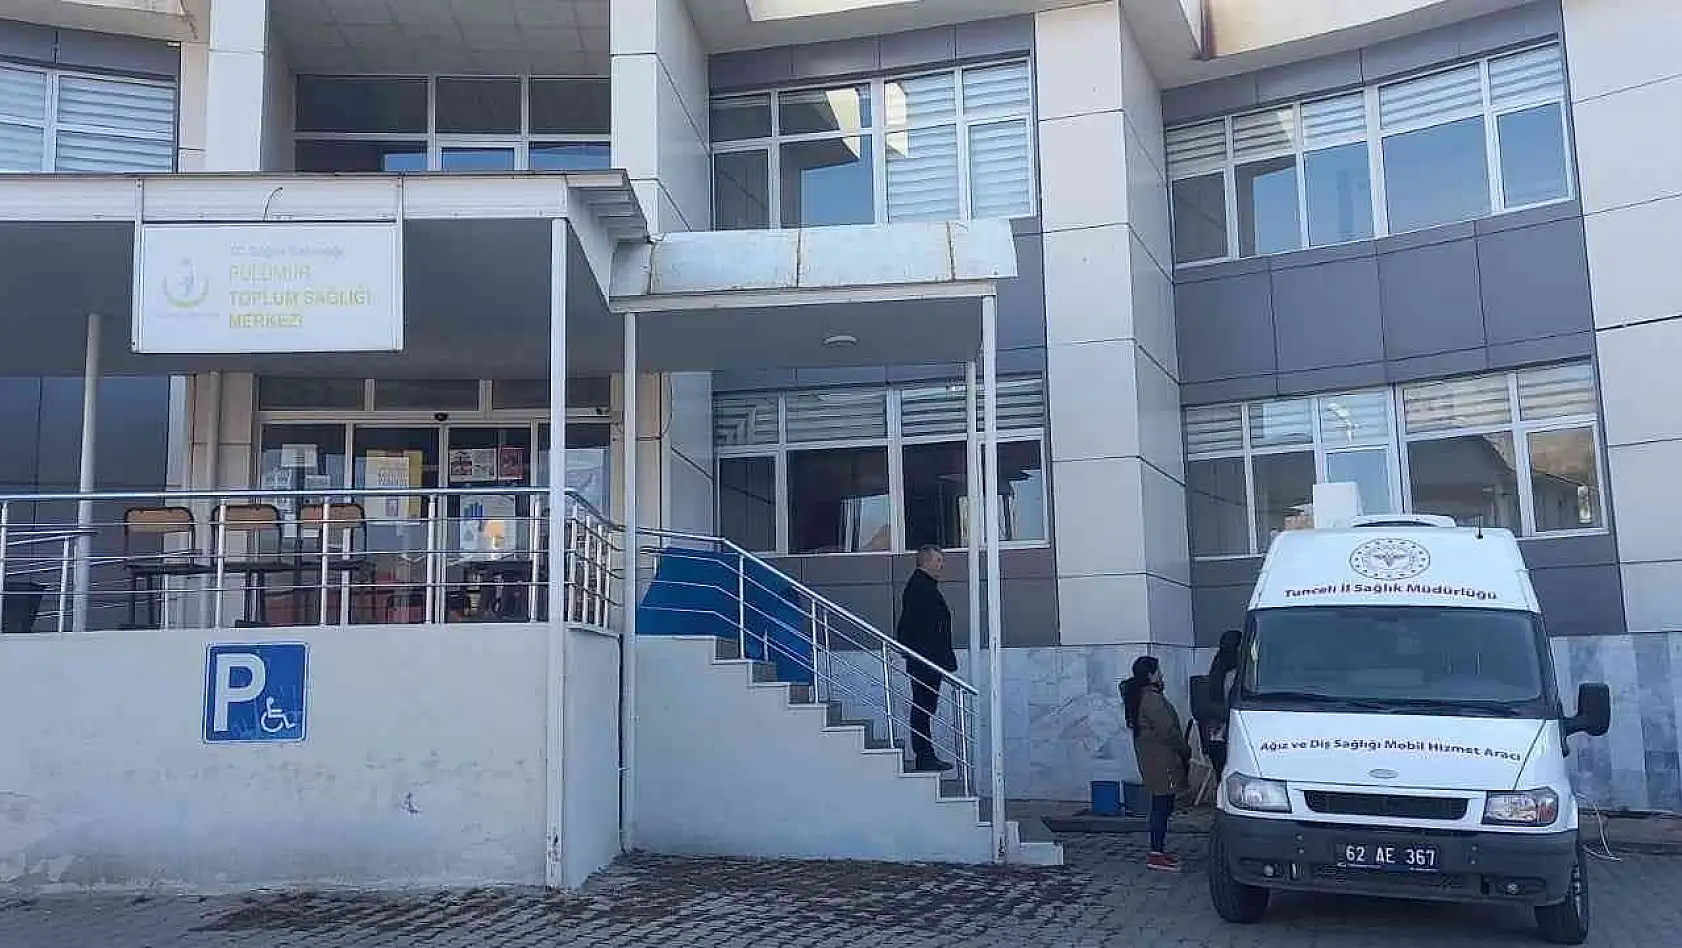 Tunceli'nin diş hekimi bulunmayan iki ilçesinde mobil ağız ve diş sağlığı hizmeti verilmeye başlandı